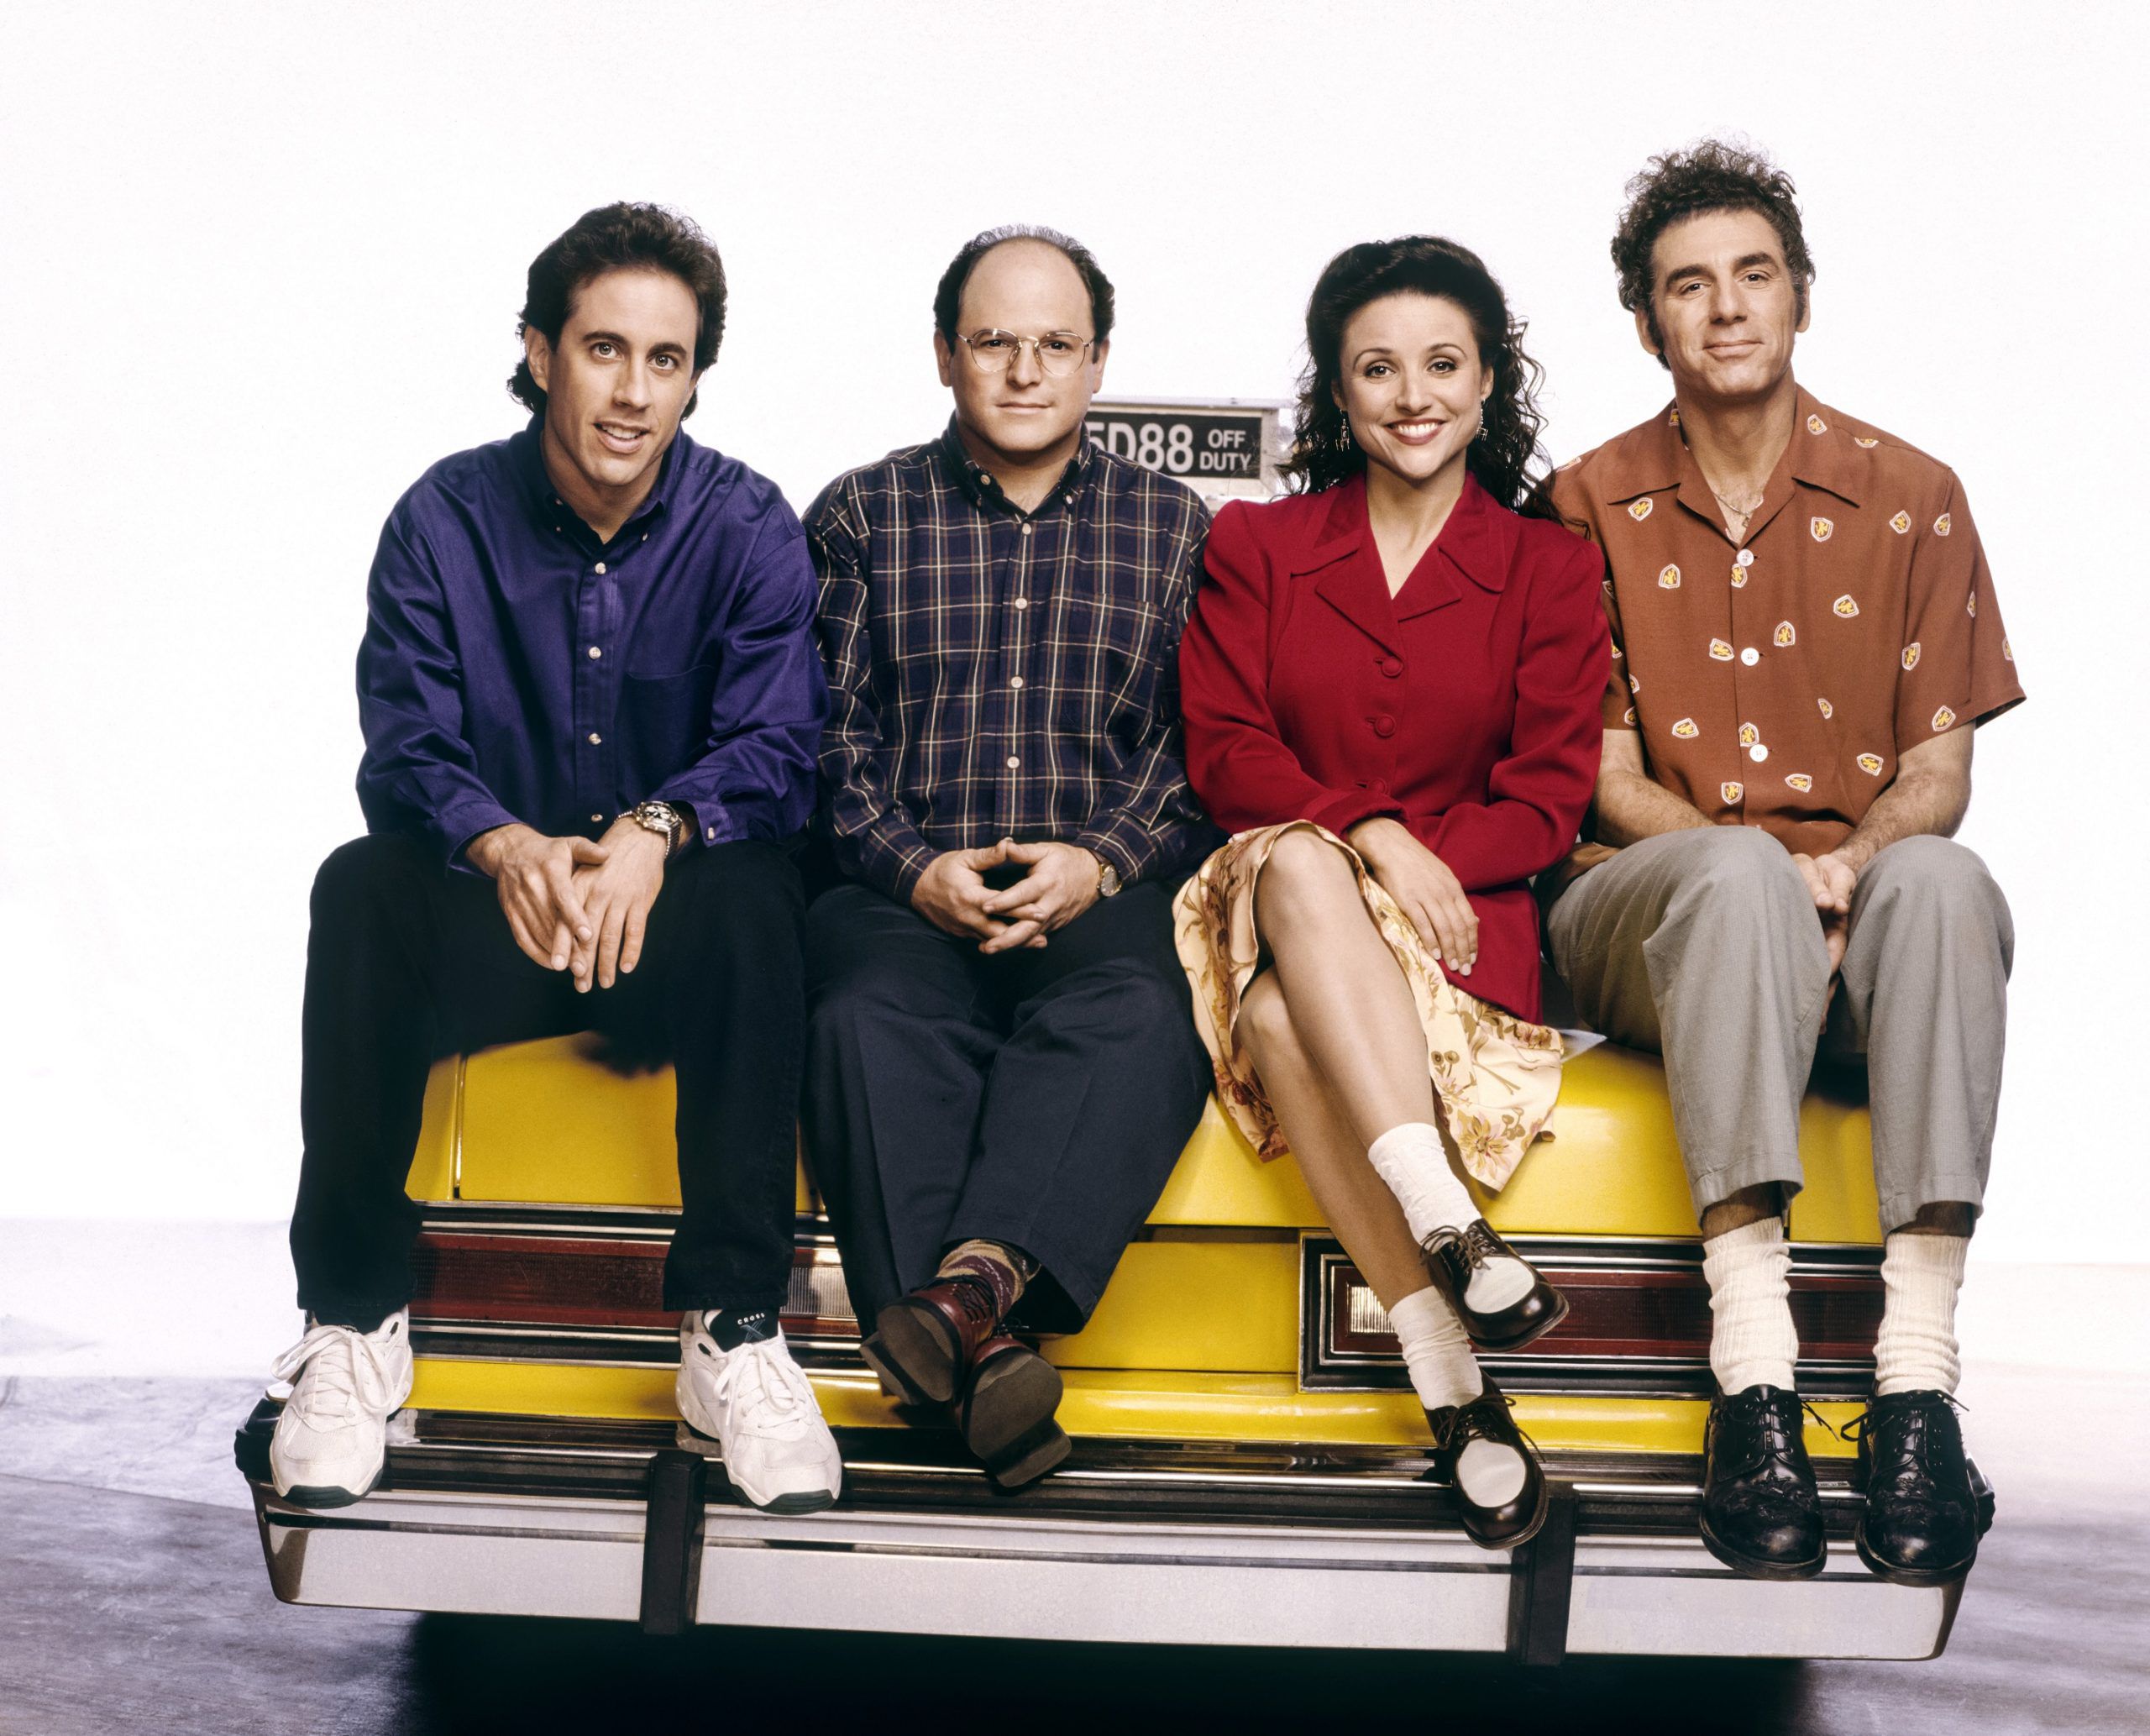 Série “Seinfeld” chega ao streaming nacional português